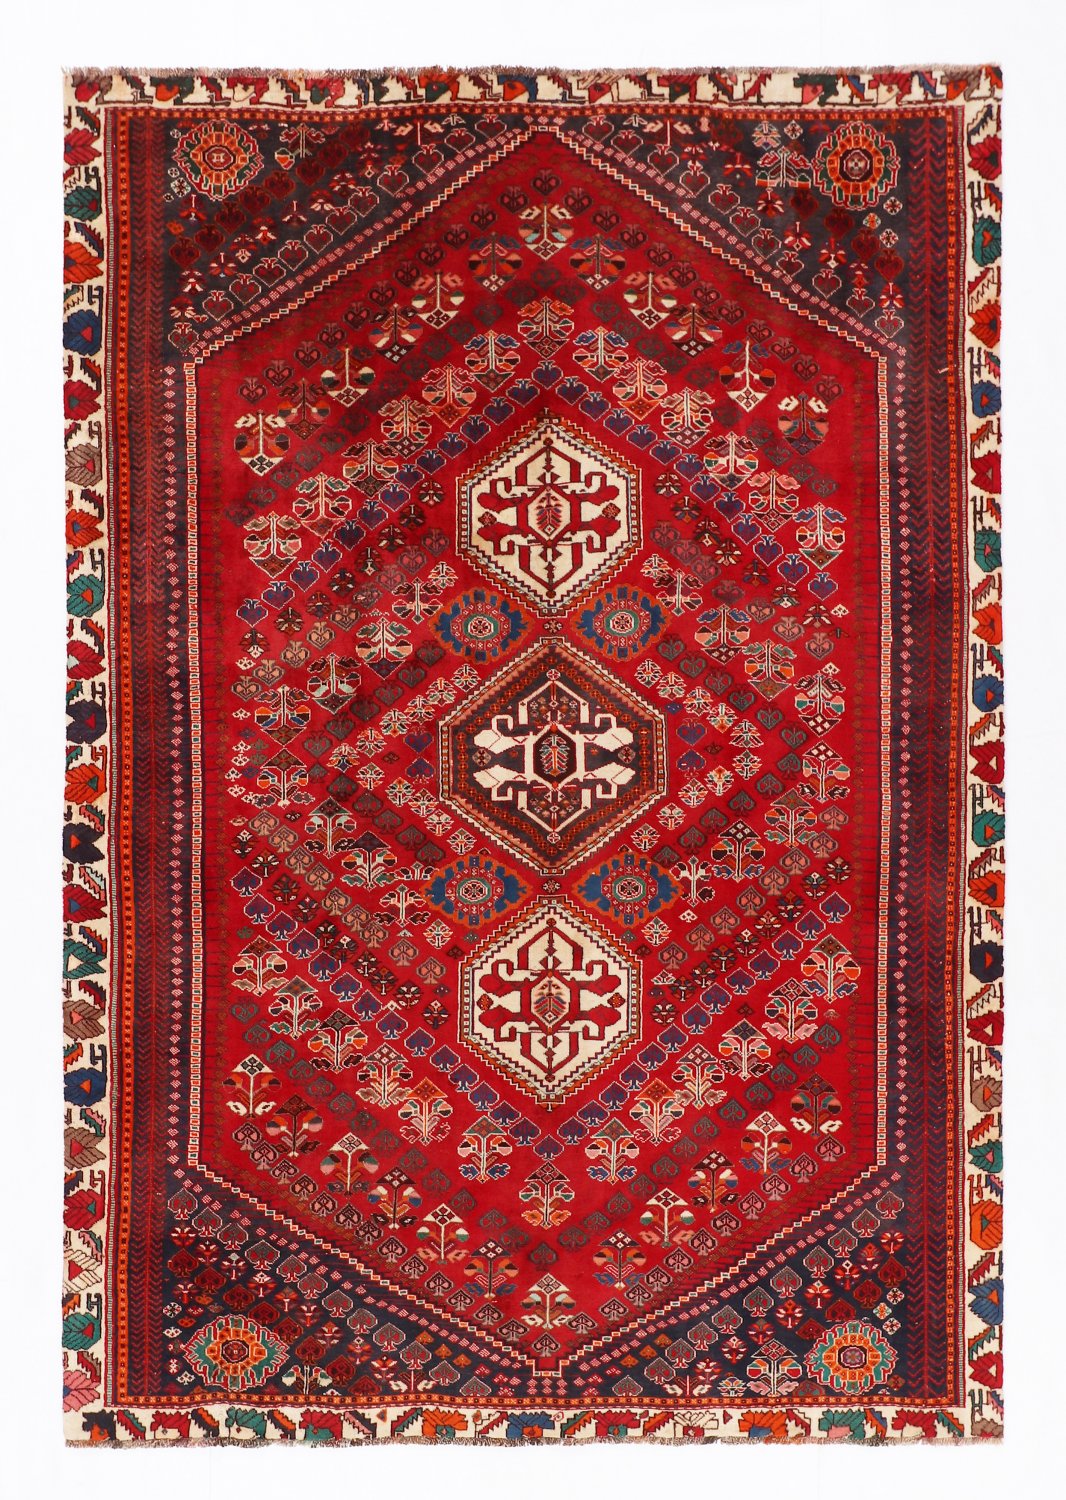 Persian rug Hamedan 295 x 202 cm